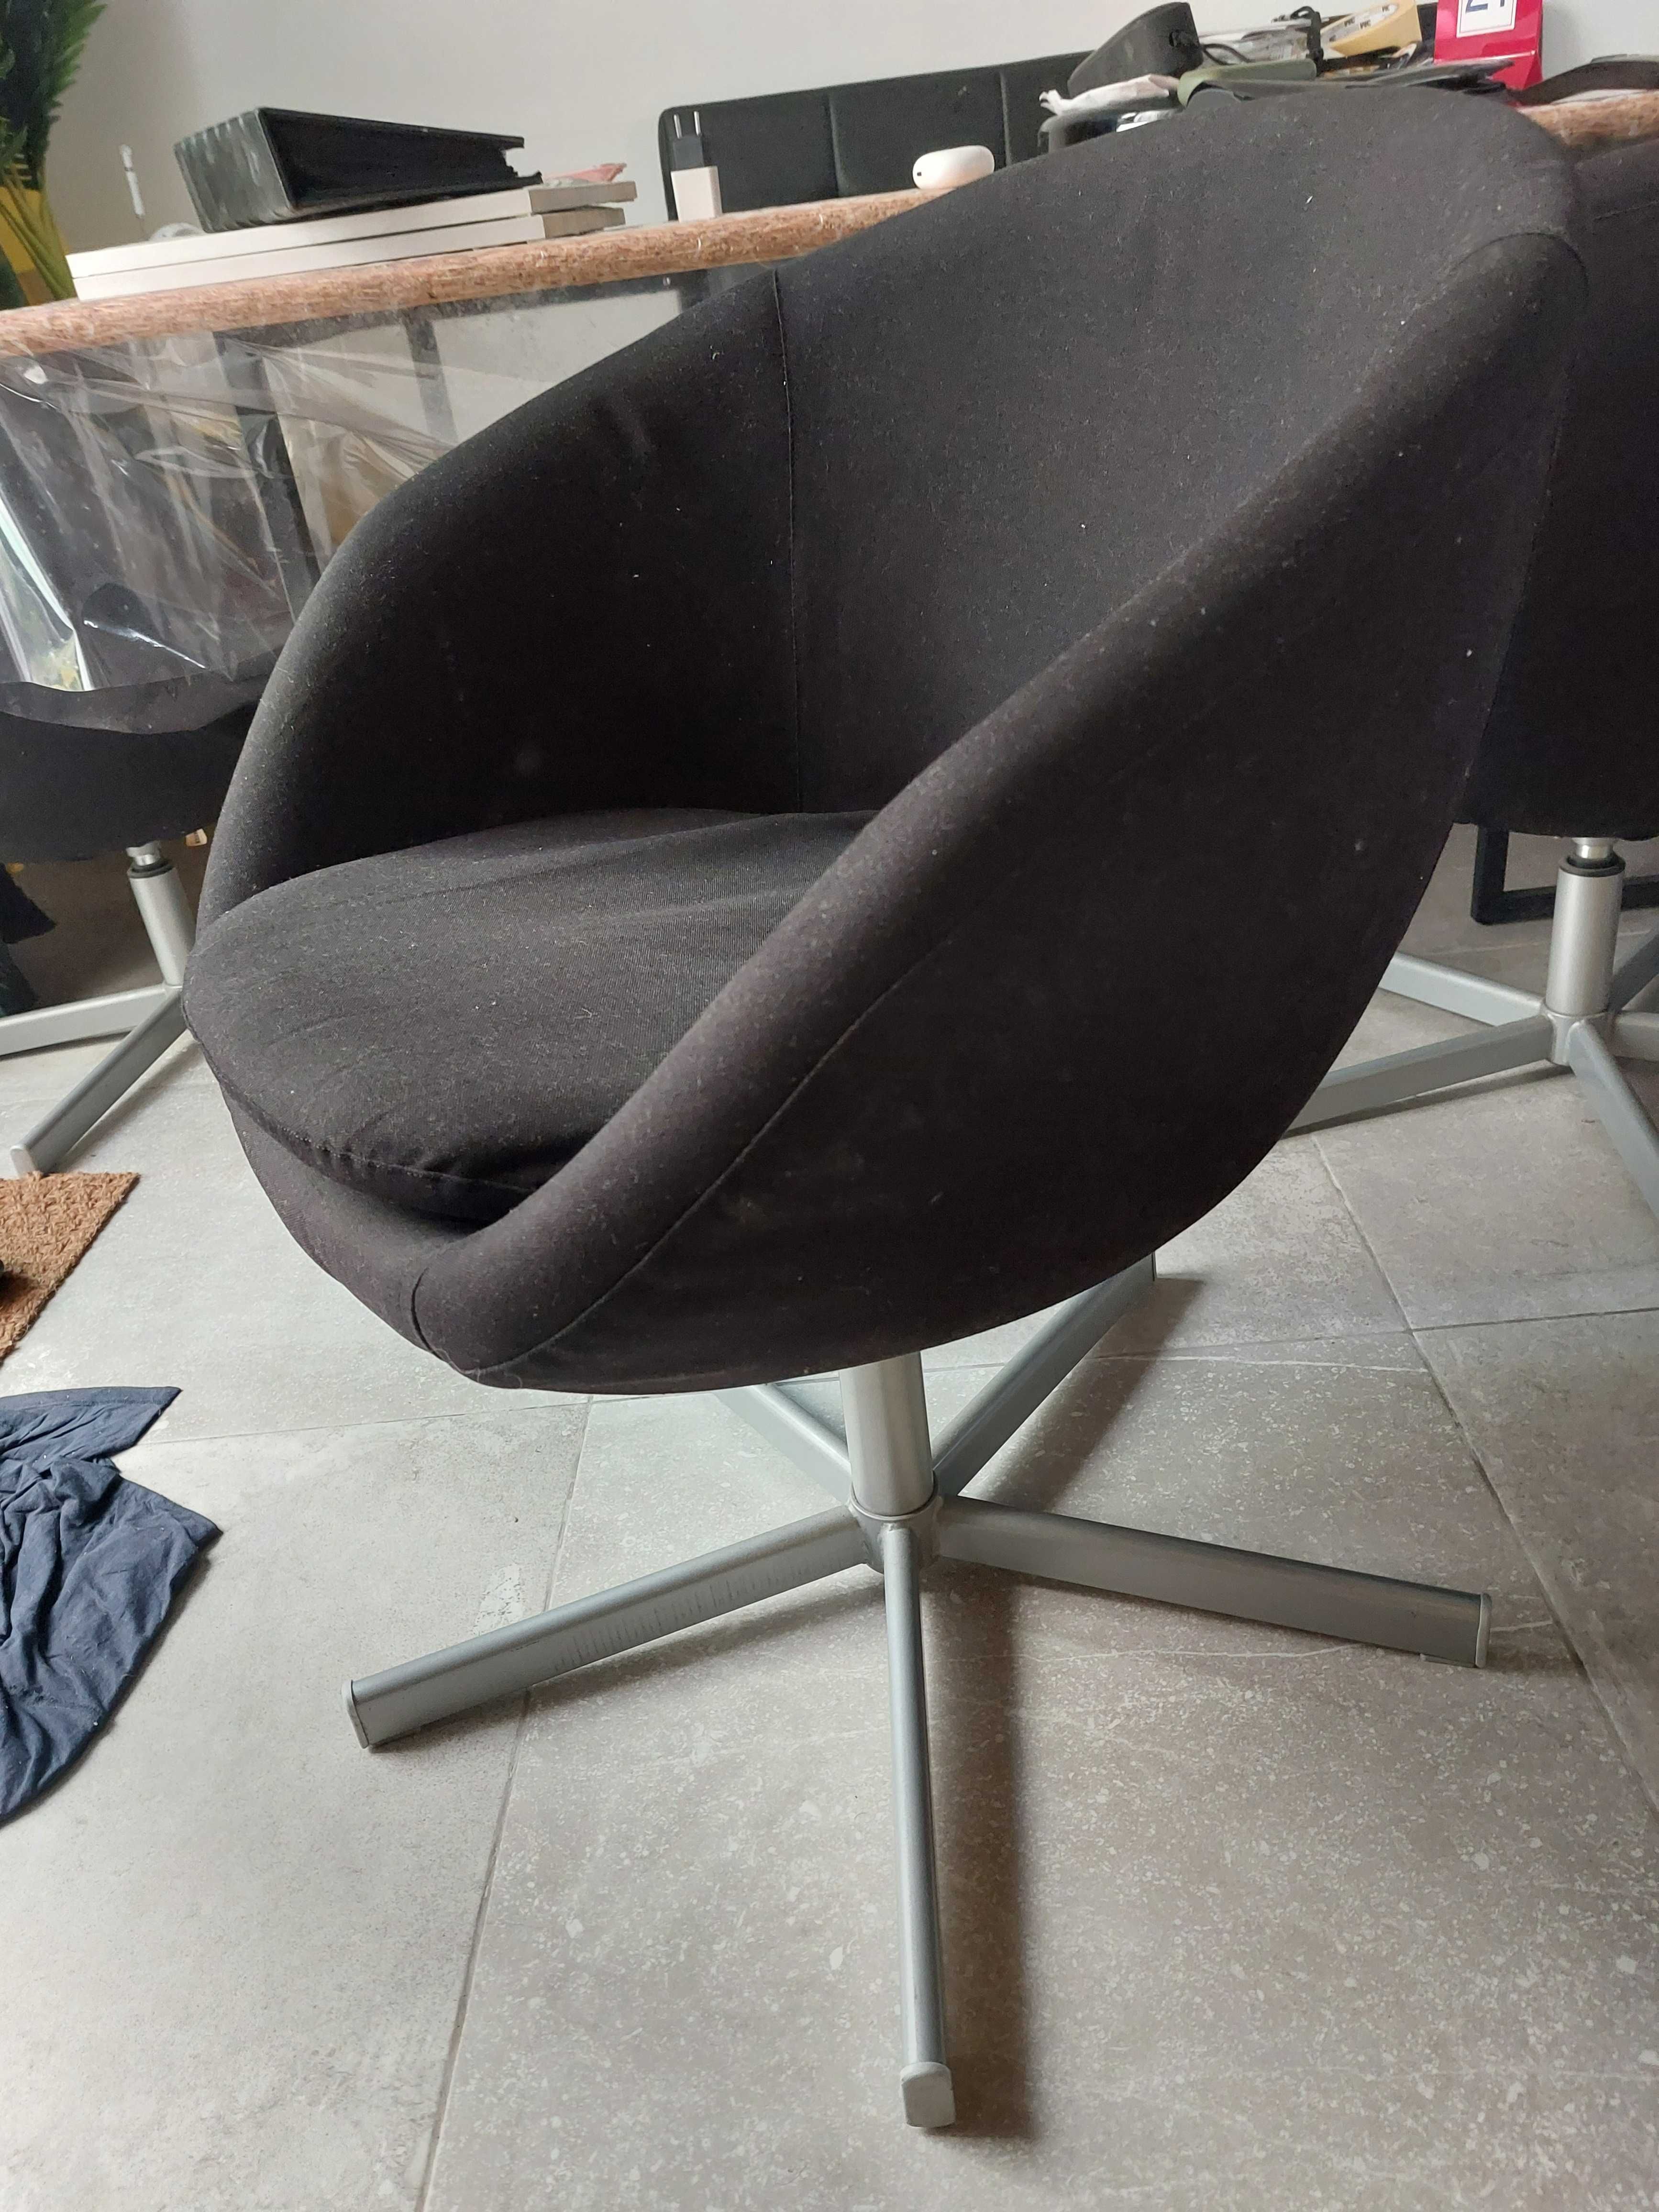 2 cadeiras giratorias pretas IKEA Skruvsta